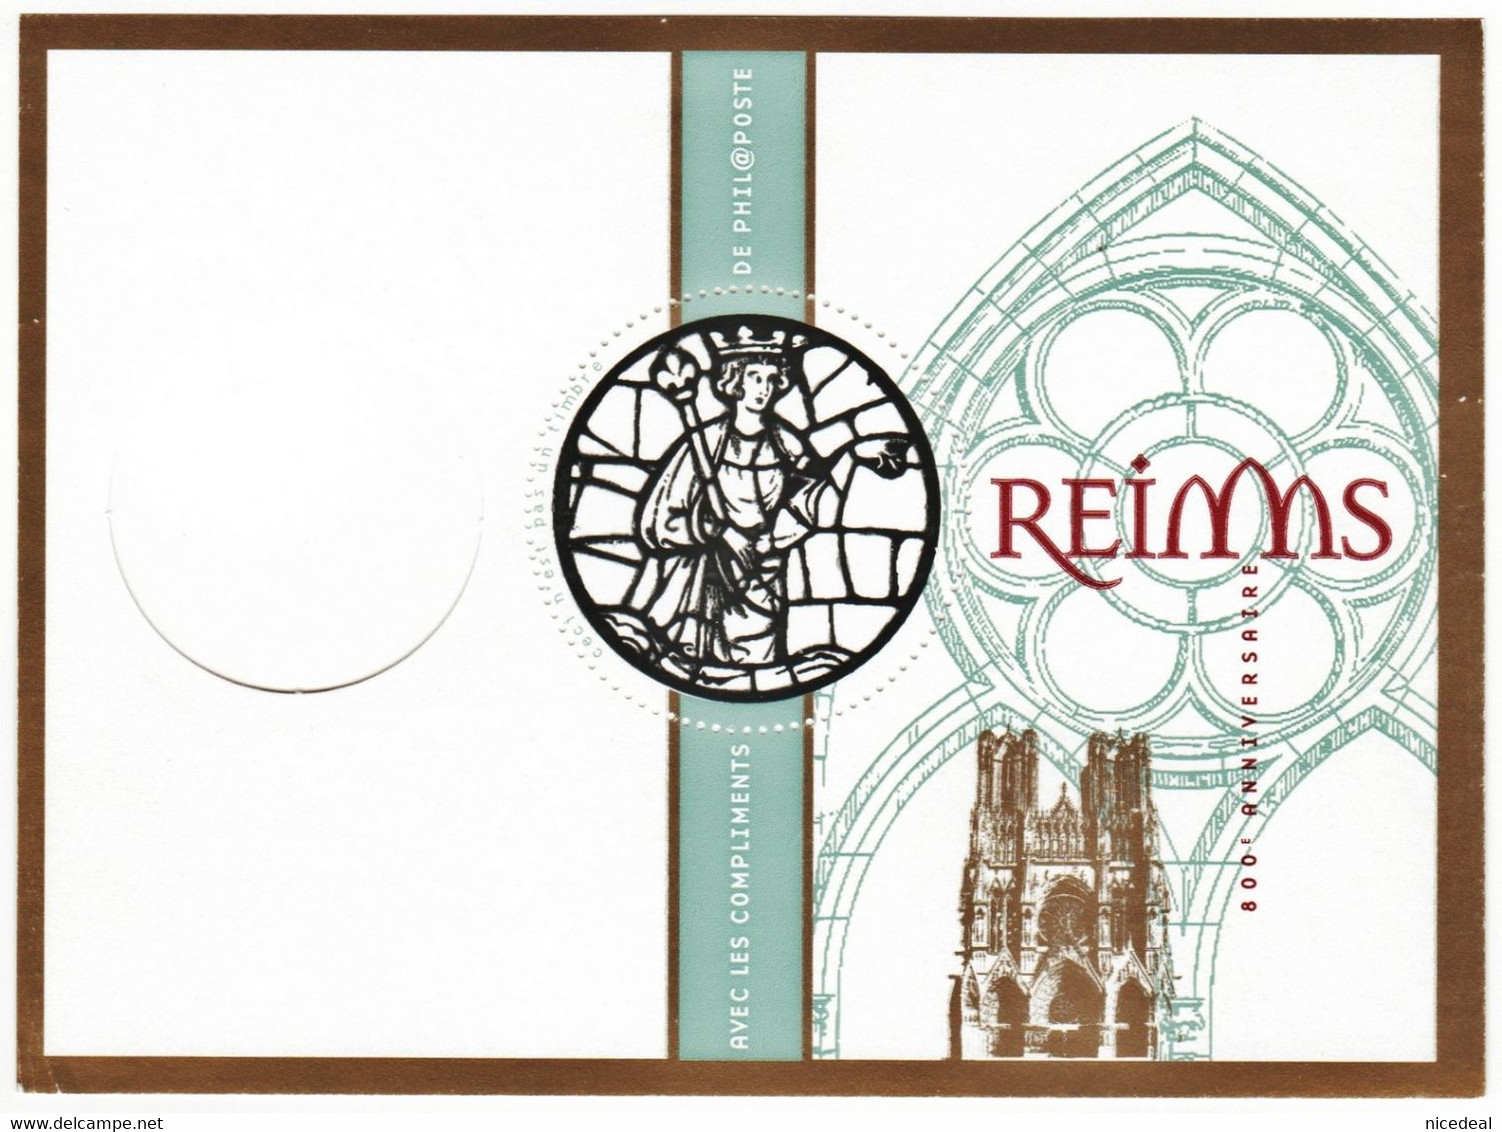 2 Blocs Feuillets 800e Anniversaire Cathédrale Reims + Enveloppe Phil@poste Bonne Année 2012 + Calendrier Philatélique - Blocs Souvenir